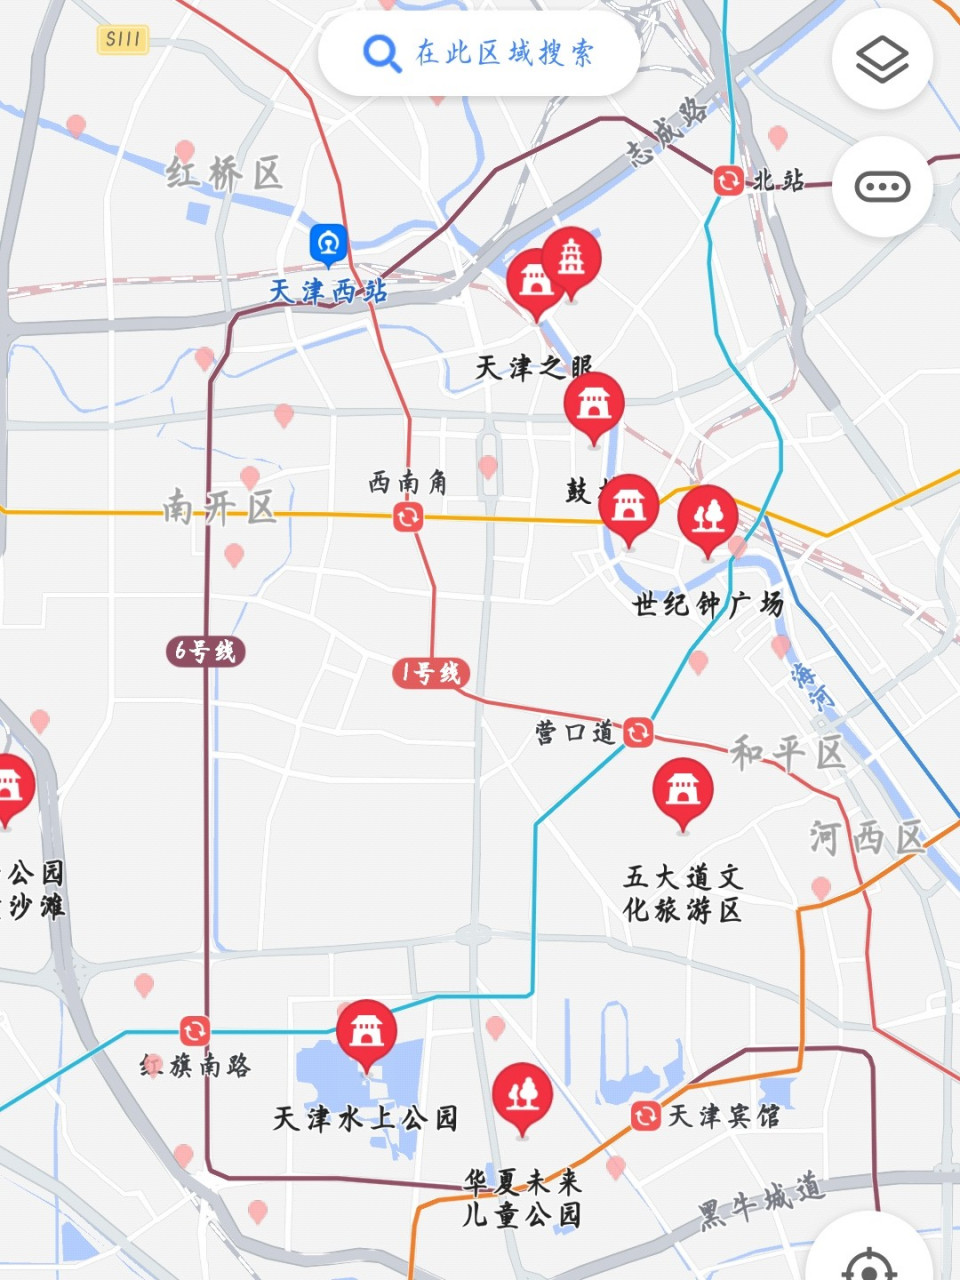 天津西站地图图片